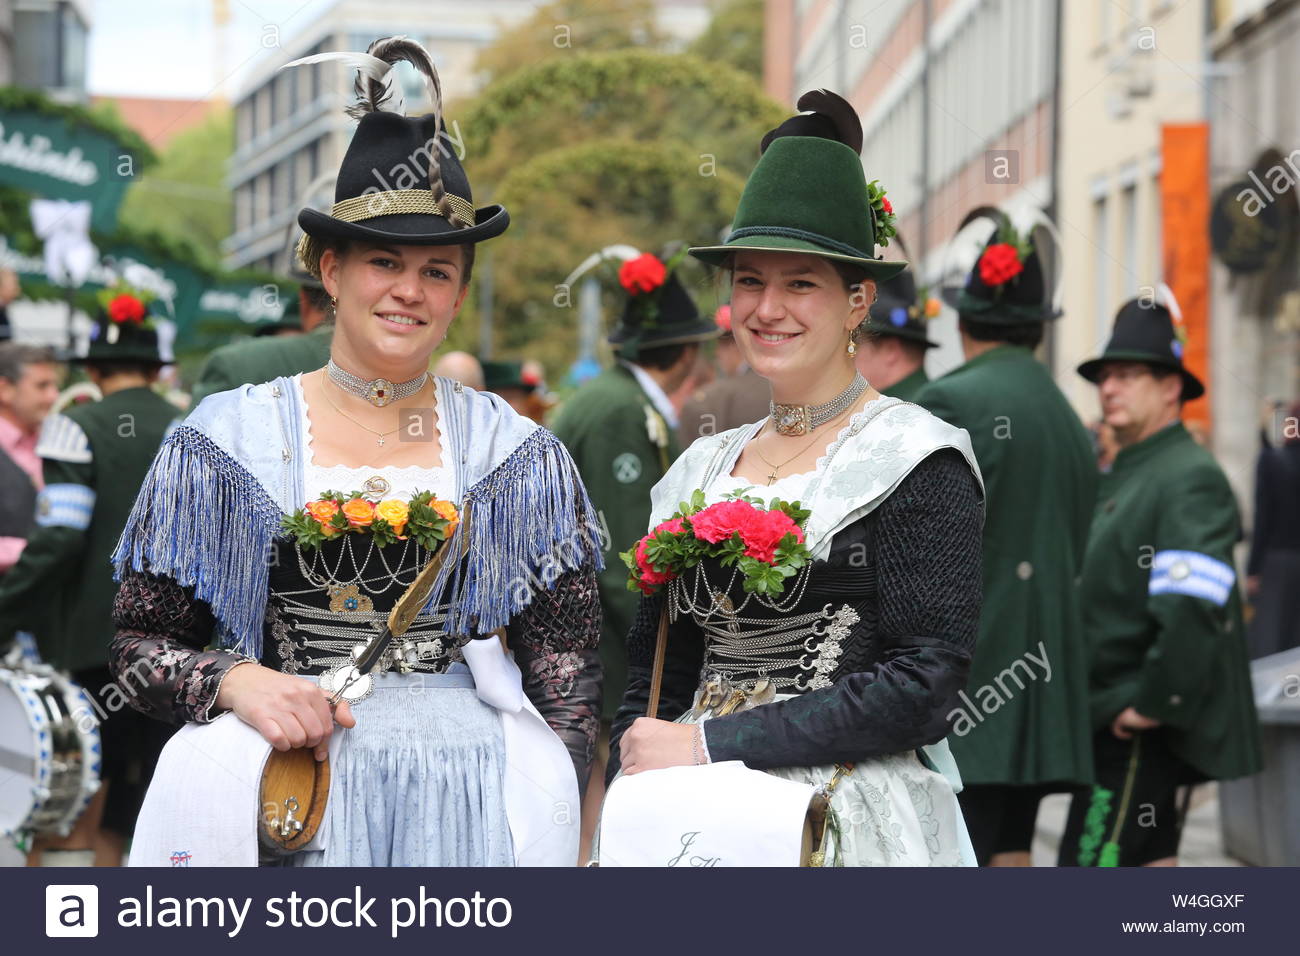 Zwei Damen in der traditionellen Tracht für die Kamera zu Beginn des Oktoberfestes Parade in München darstellen, Deutschland Stockfoto